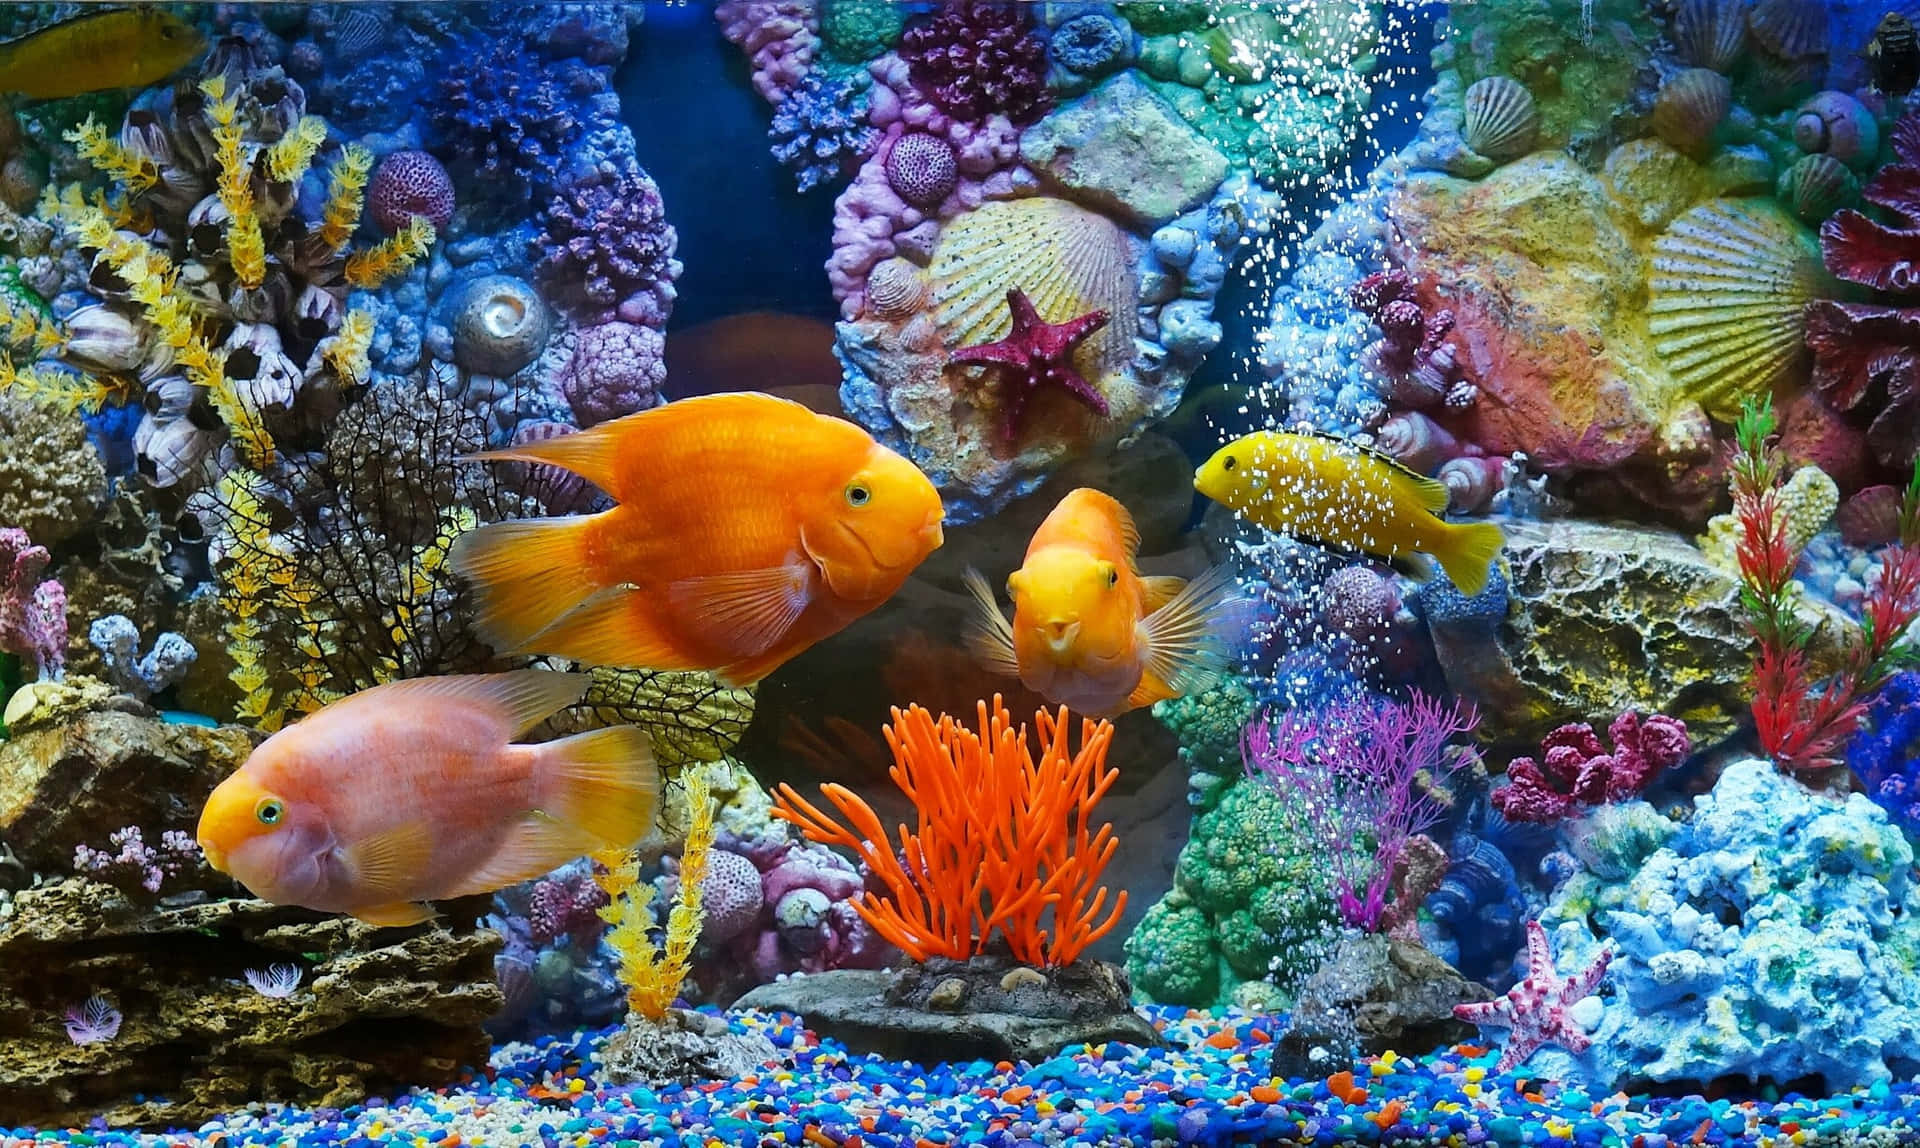 A mesmerizing view of a vibrant aquarium.